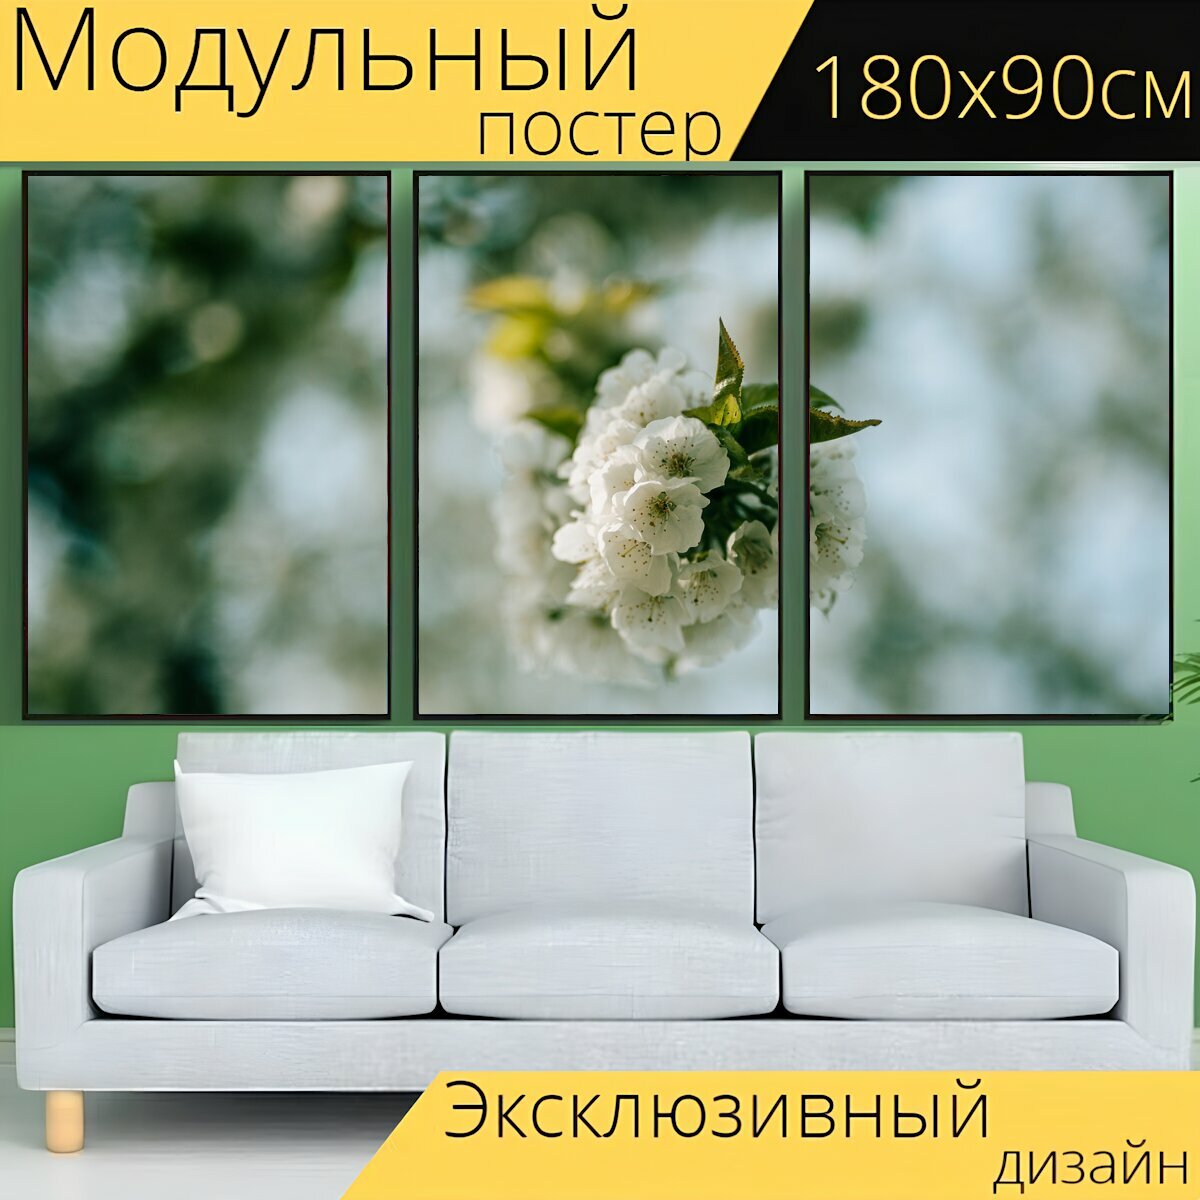 Модульный постер "Белые цветки, блум, цвести" 180 x 90 см. для интерьера